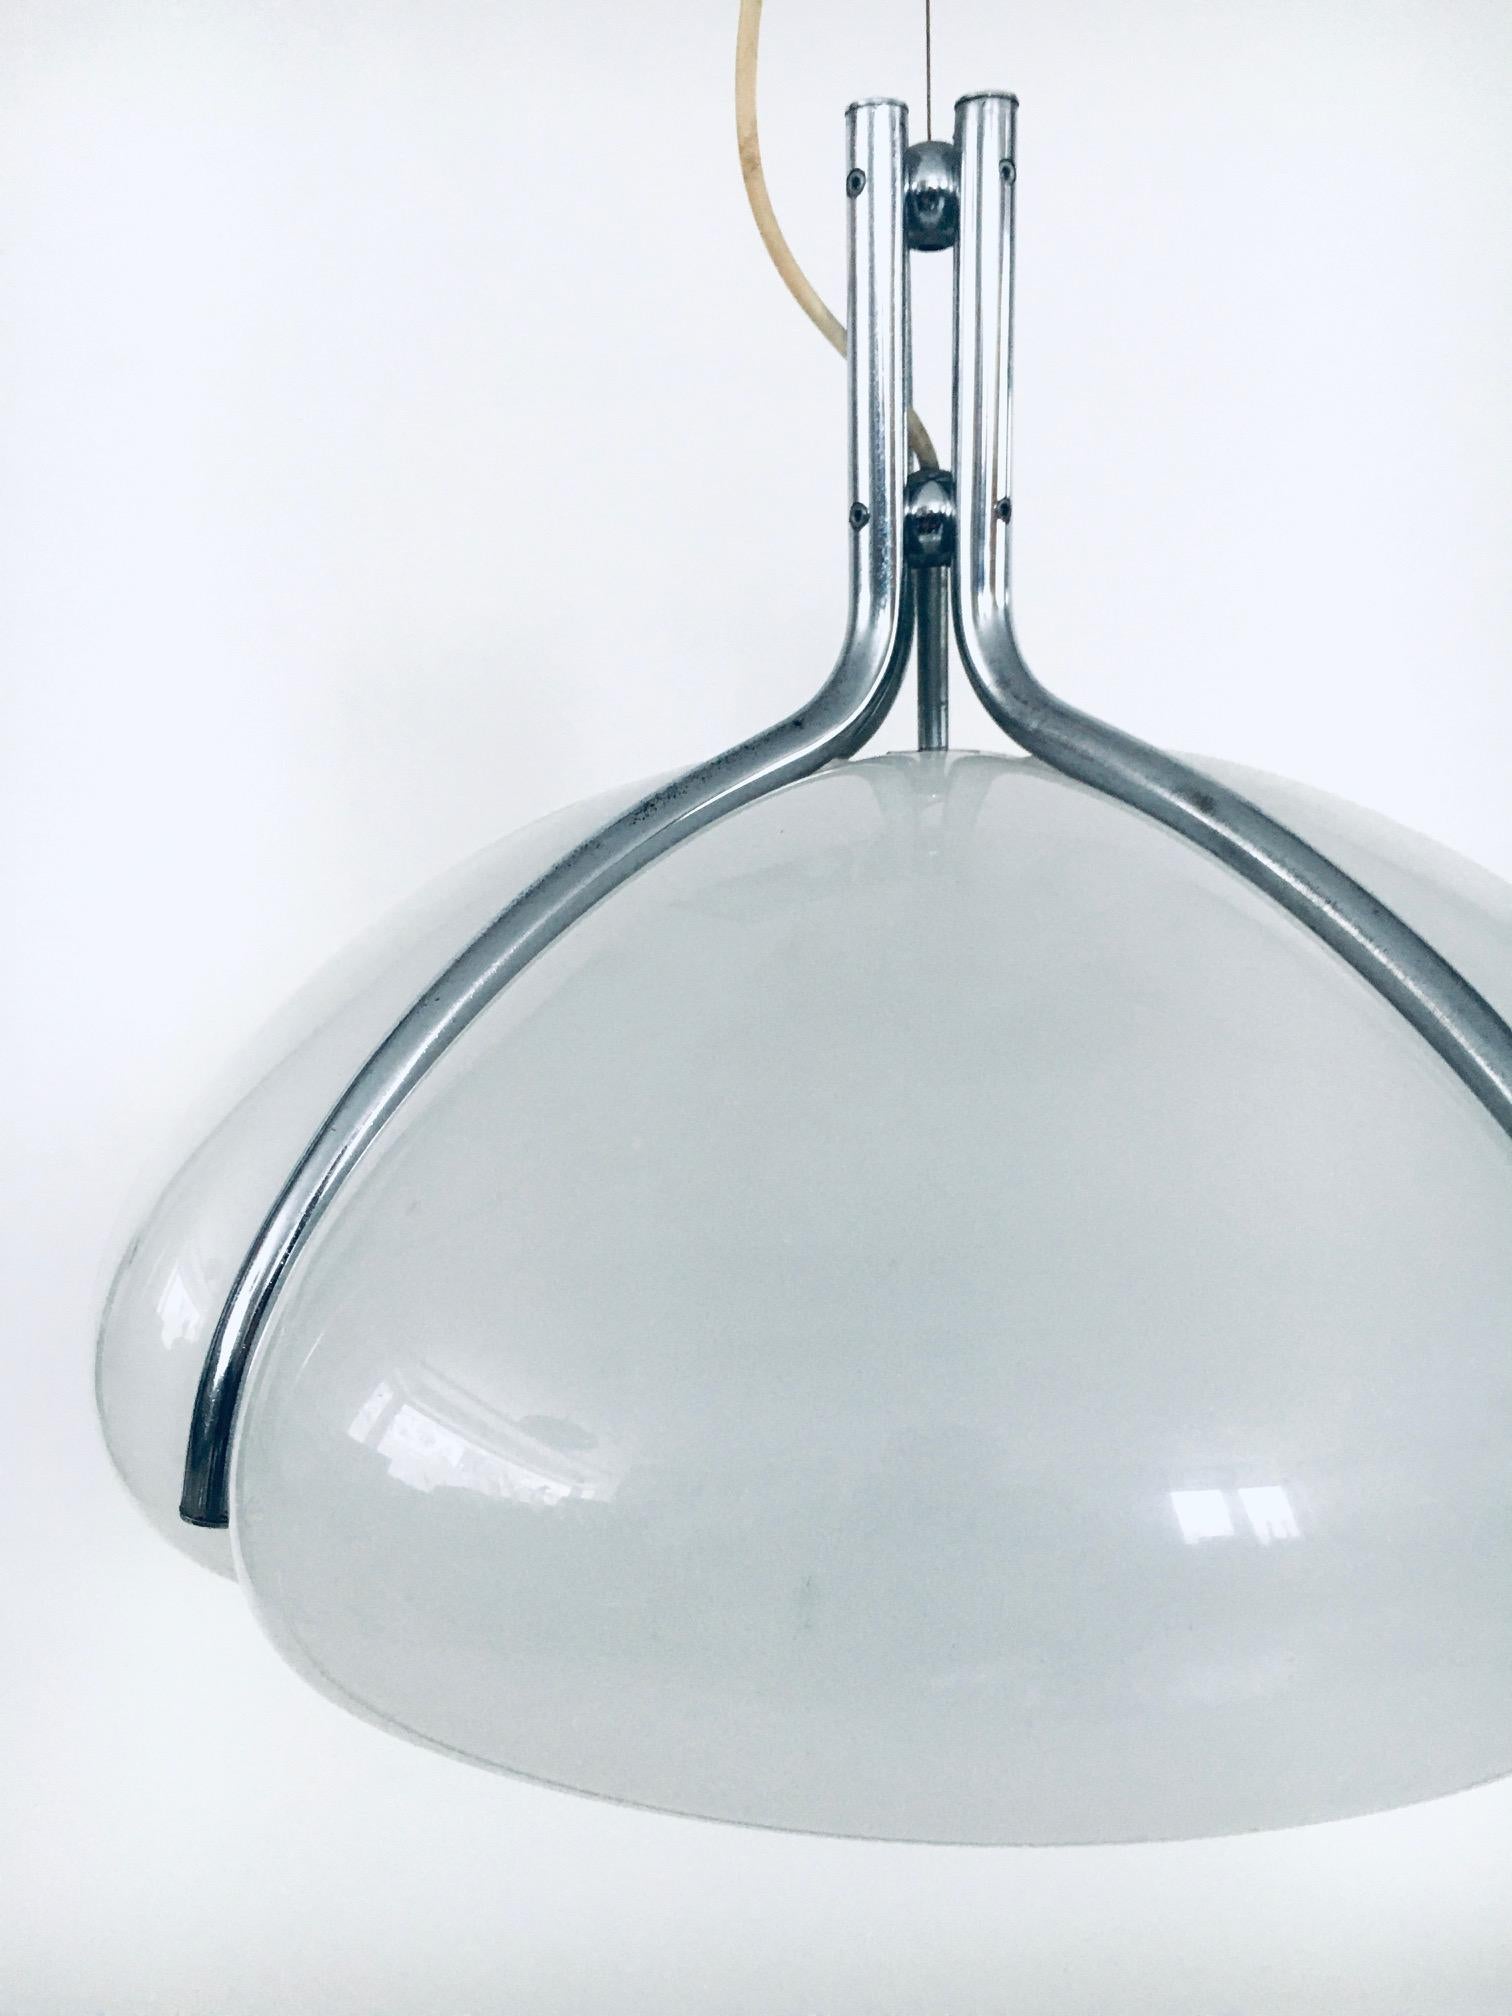 Quadrifoglio Pendant Lamp by Gae Aulenti for Guzzini, Italy 1970's For Sale 3